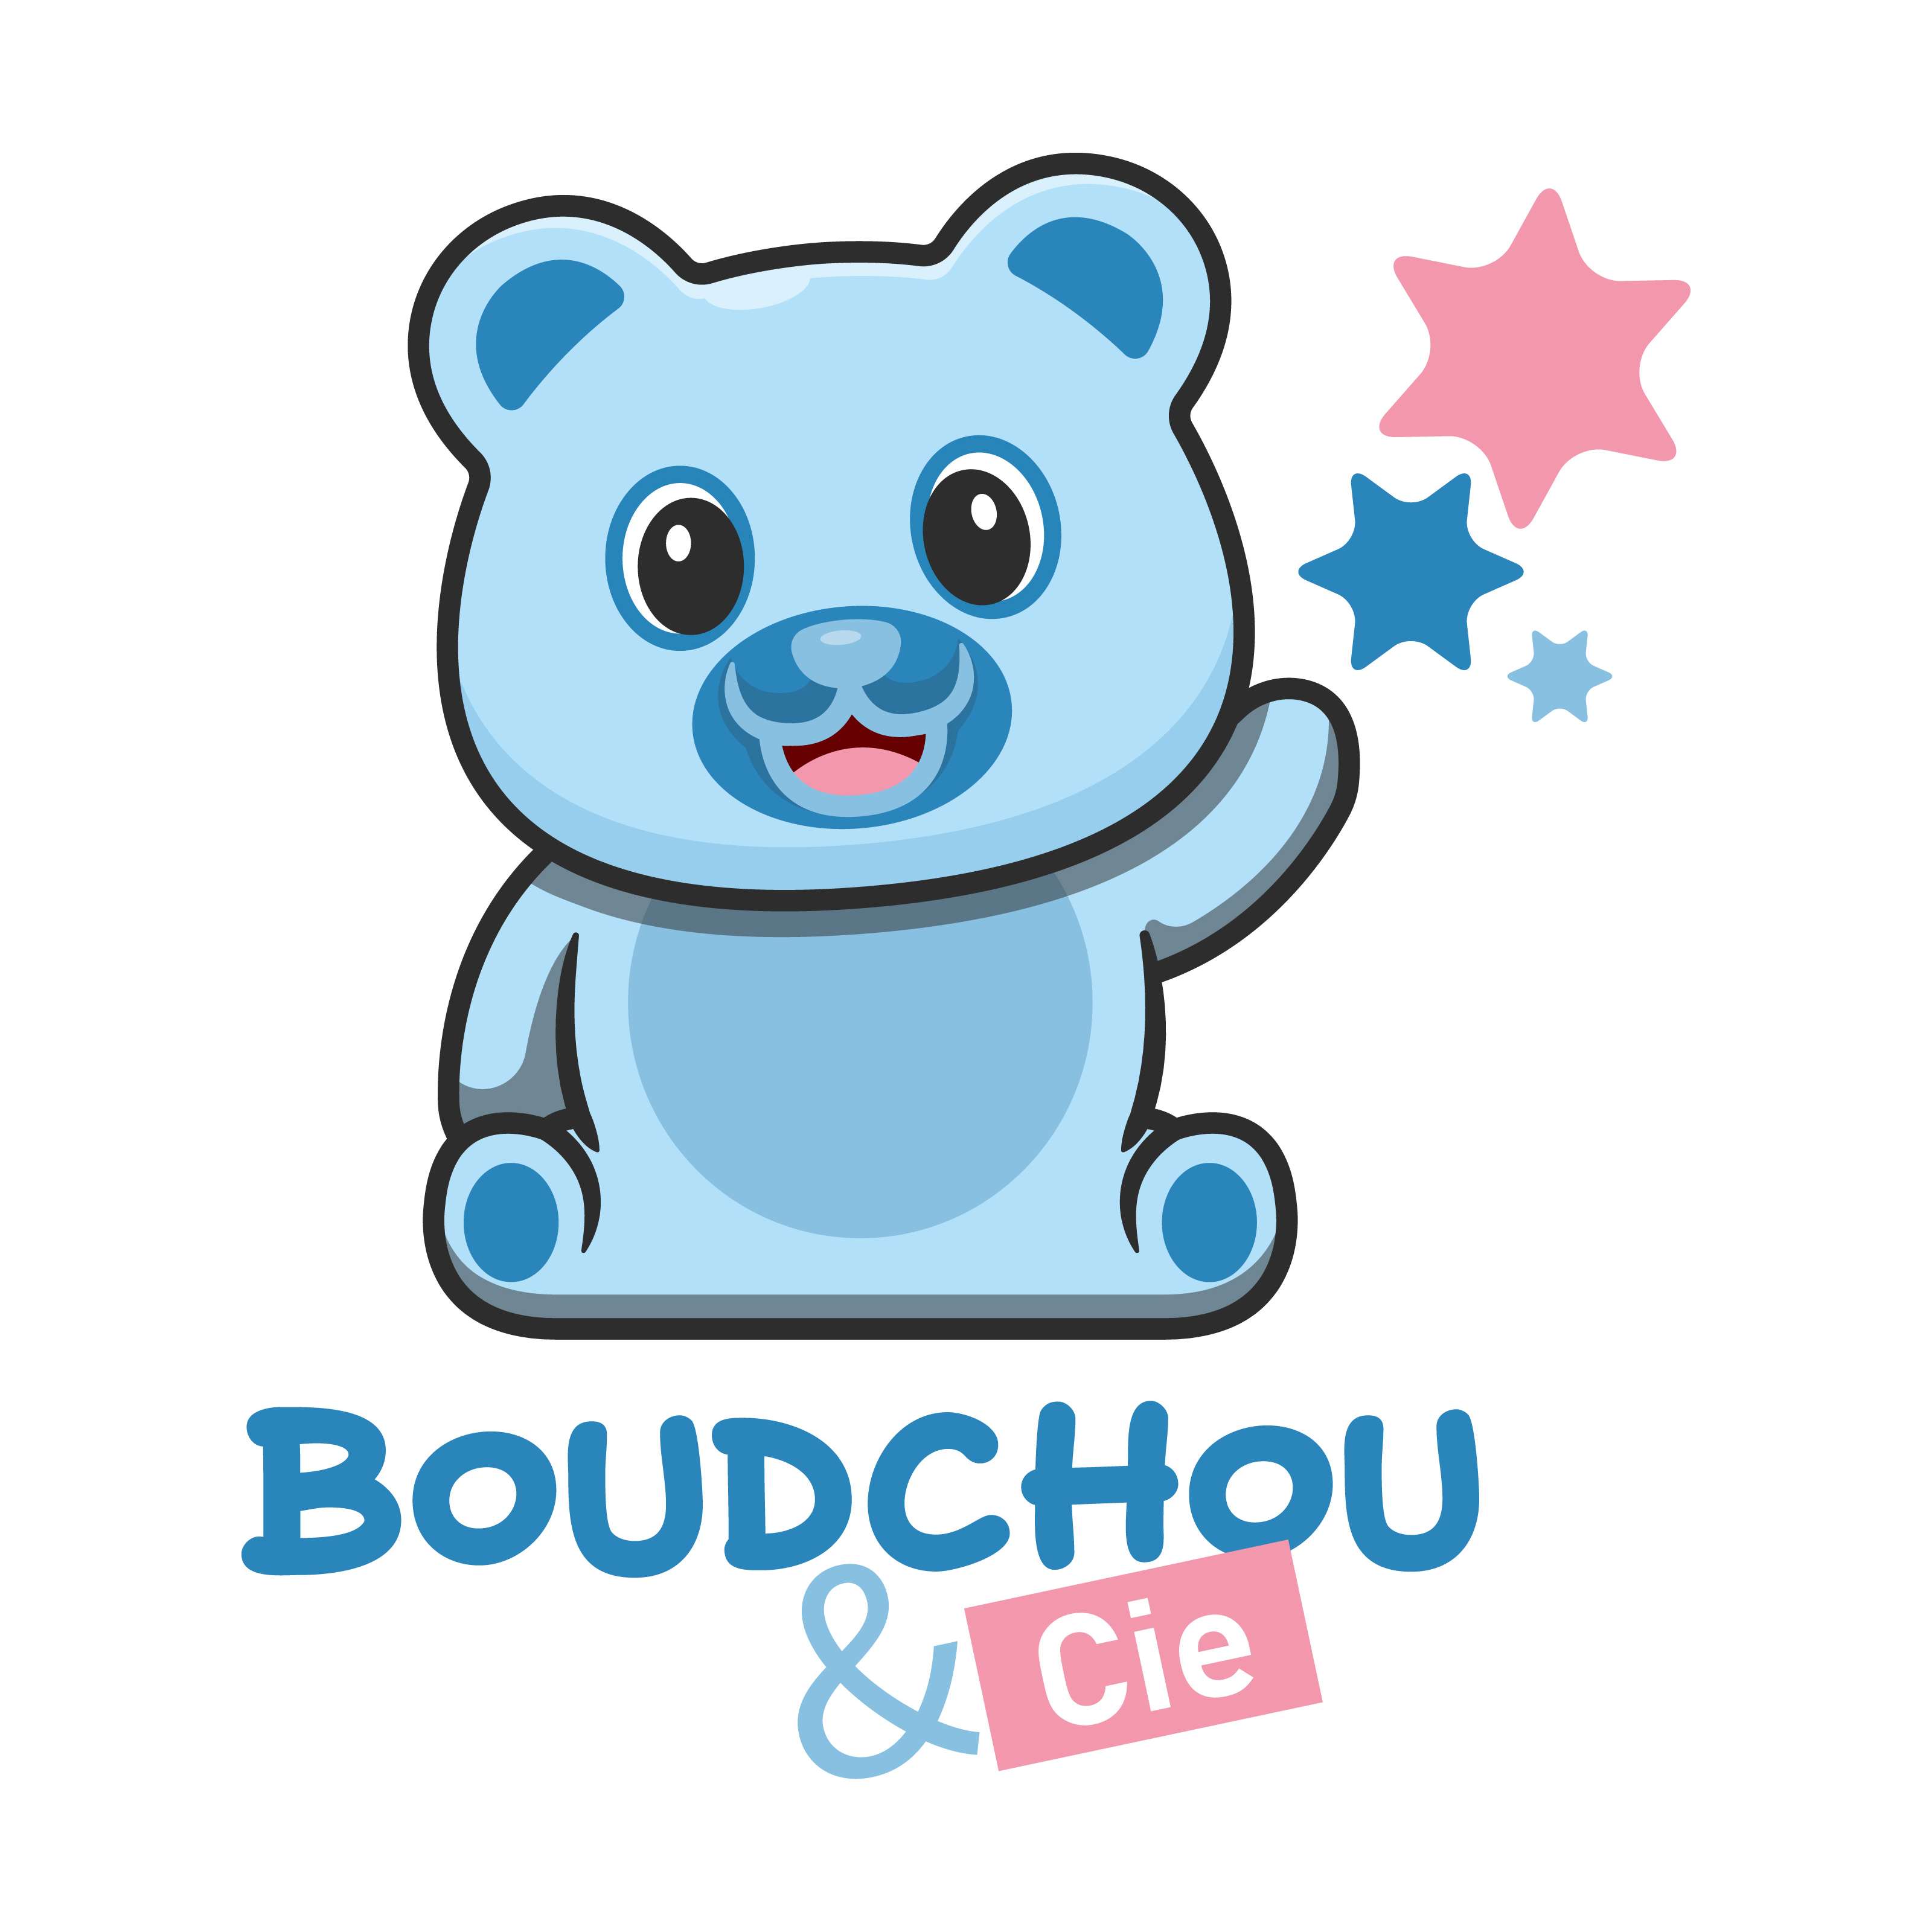 Boudchou & Cie